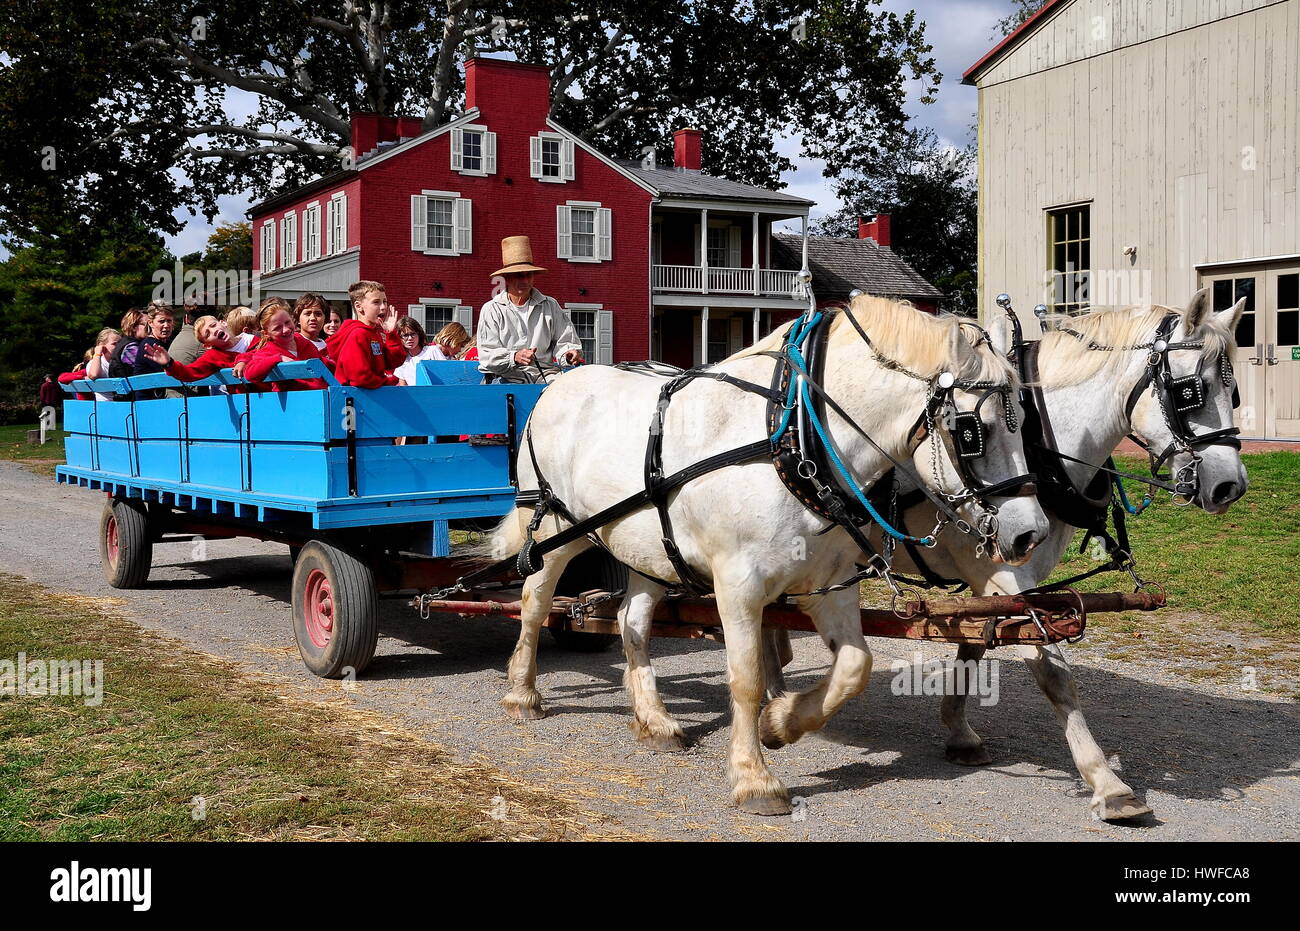 Lancaster, Pennsylvanie - 14 octobre 2015 : les enfants de l'école équestre dans un chariot tiré par deux chevaux blancs à la Landis Valley village et musée agricole Banque D'Images